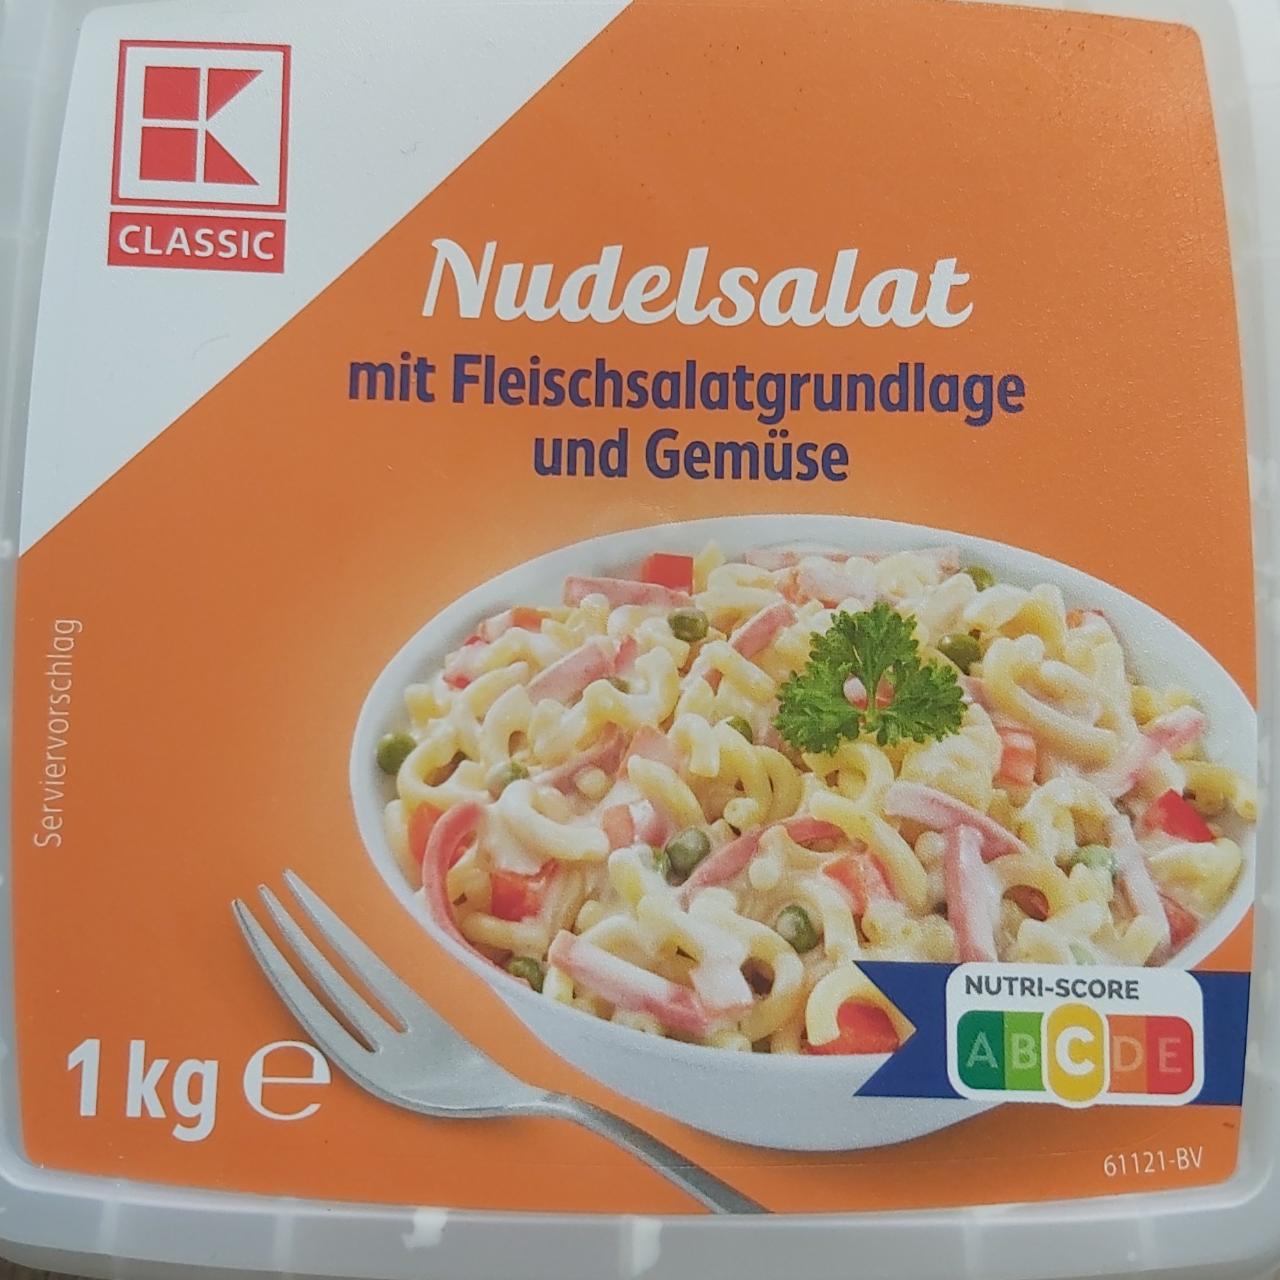 Fotografie - Nudelsalat mit Fleischsalatgrundlage und Gemüse K-Classic